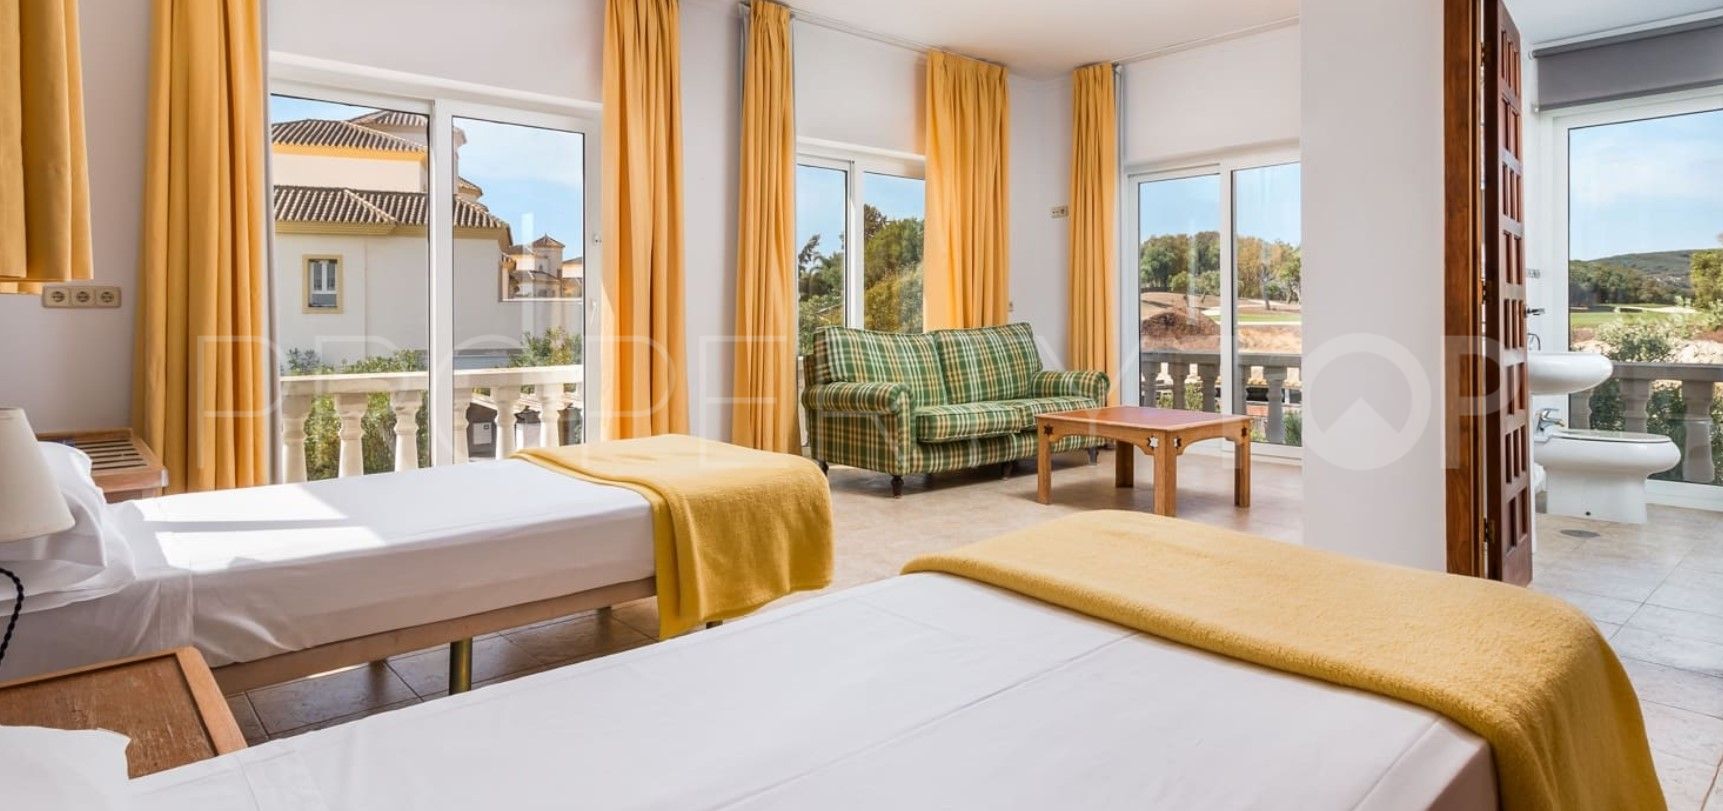 Comprar hotel en San Roque con 84 dormitorios